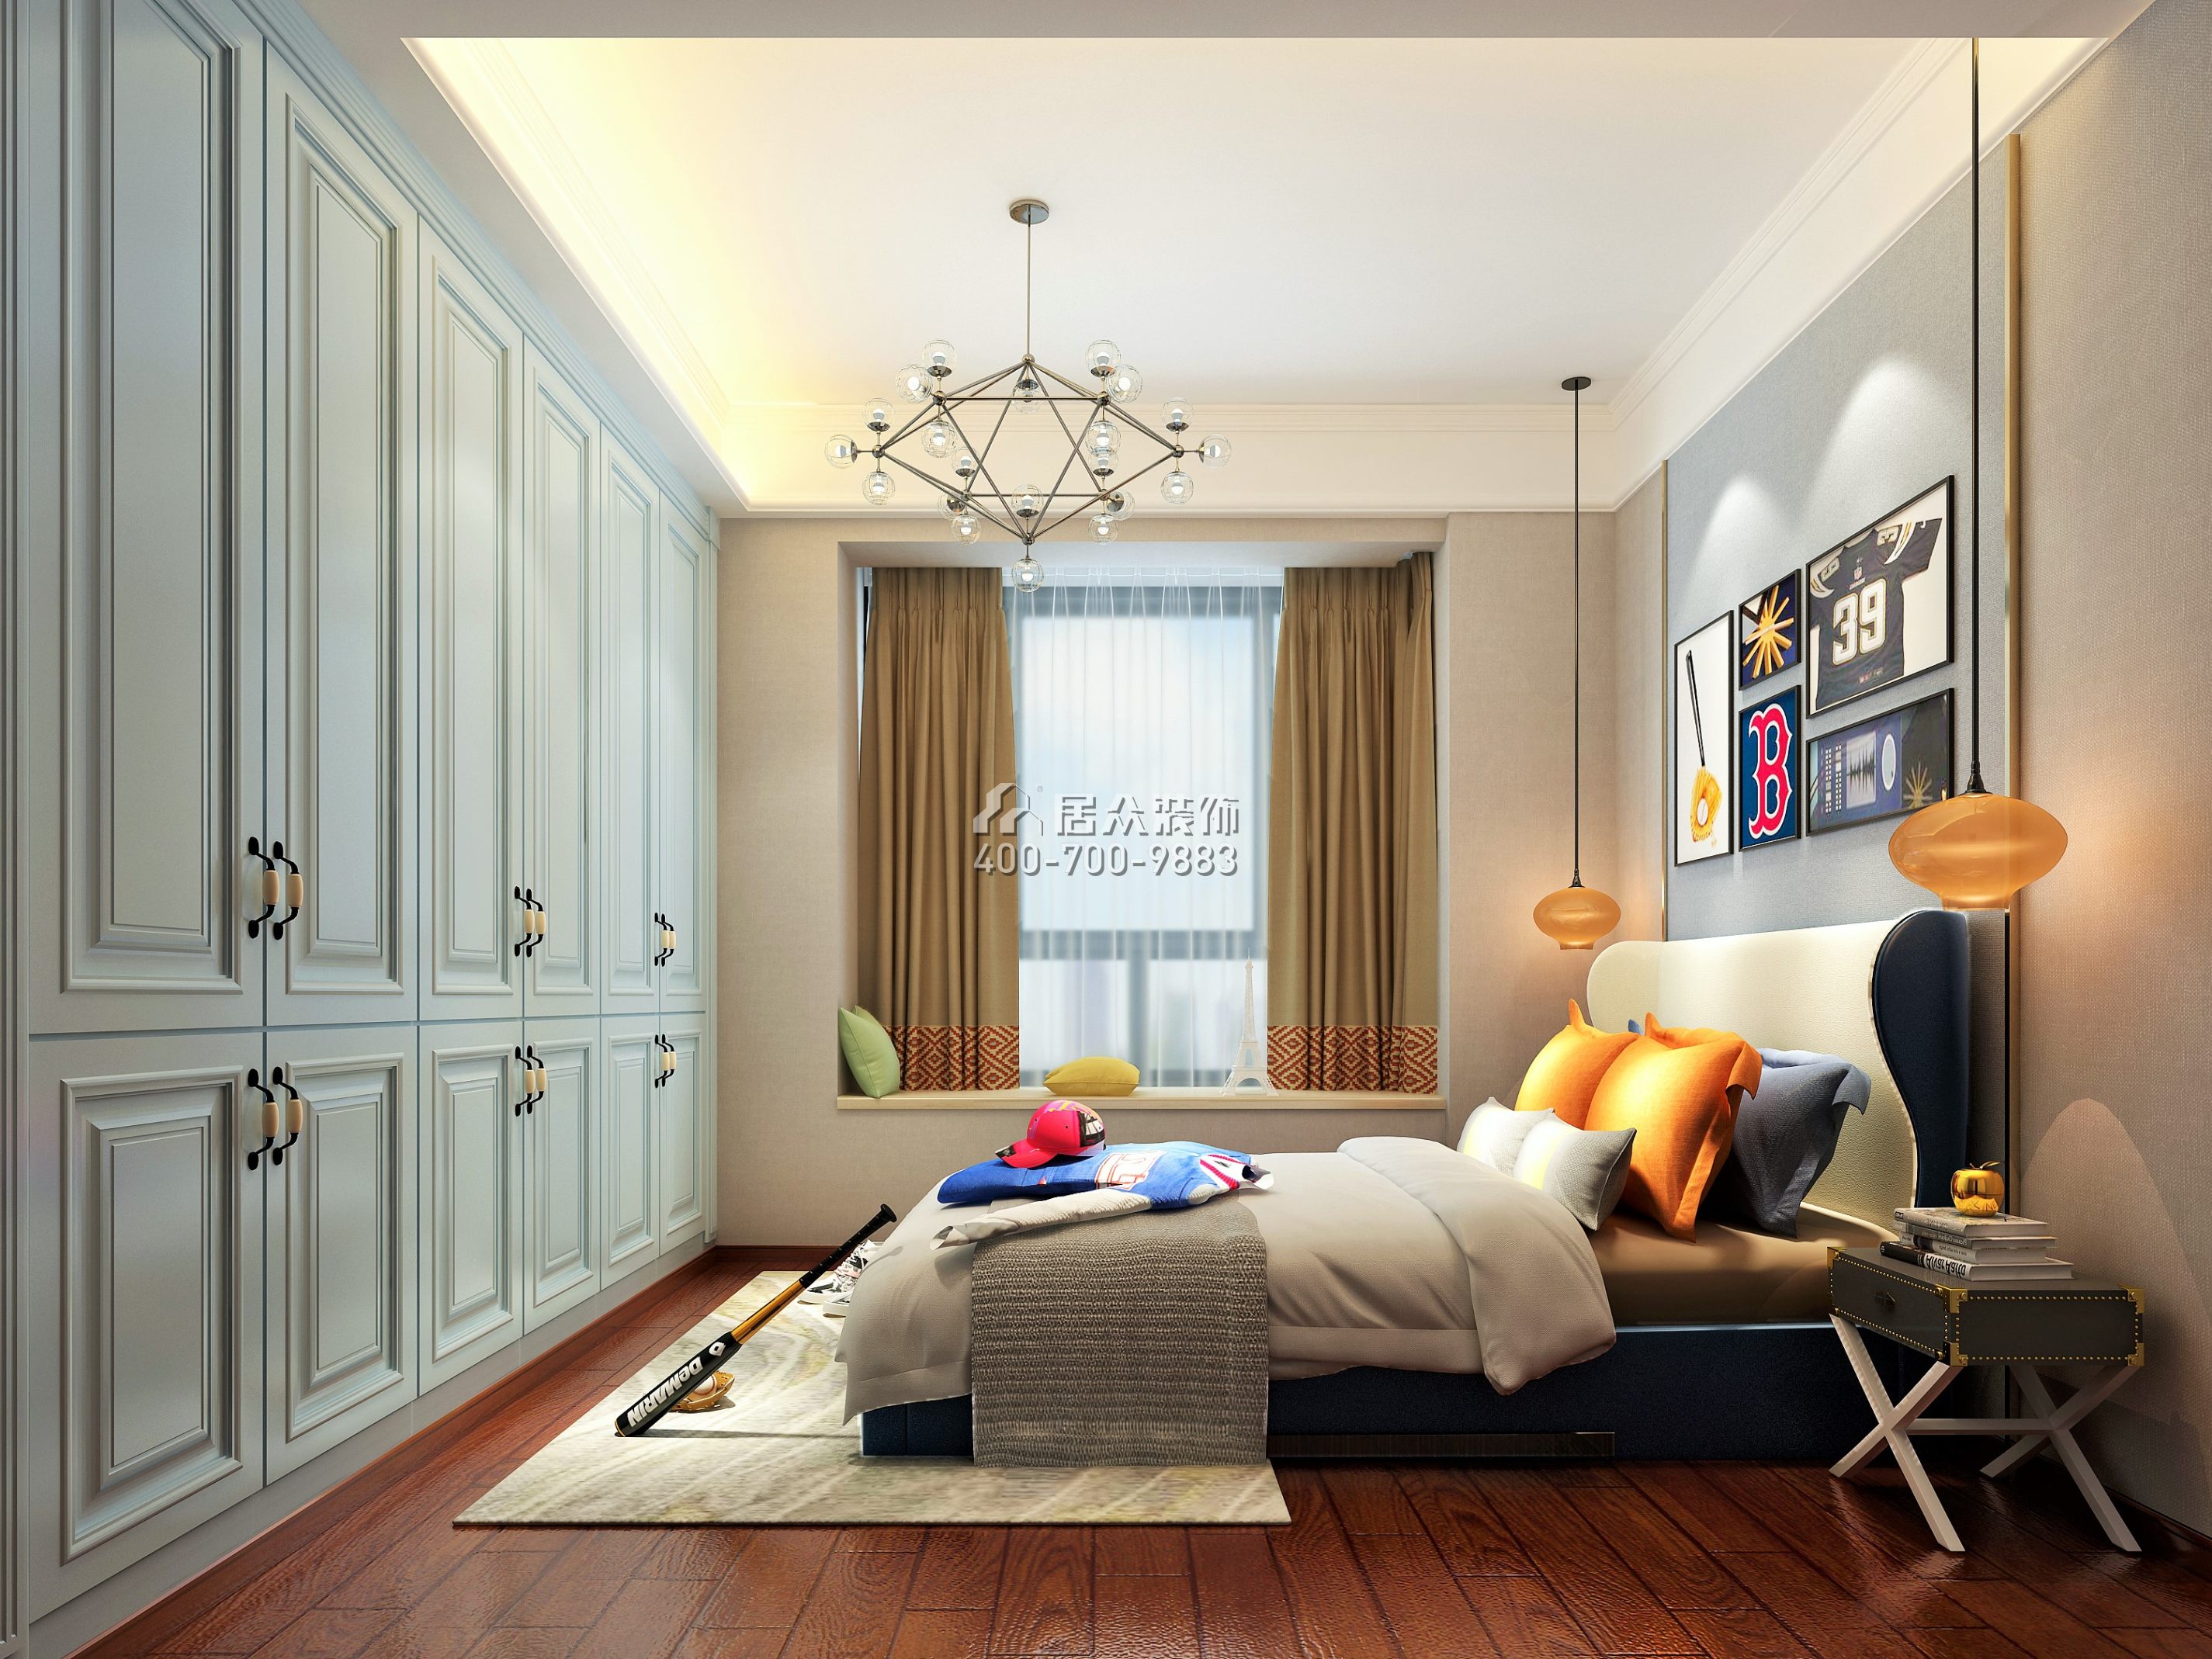 海逸豪庭170平方米中式风格别墅户型卧室装修效果图